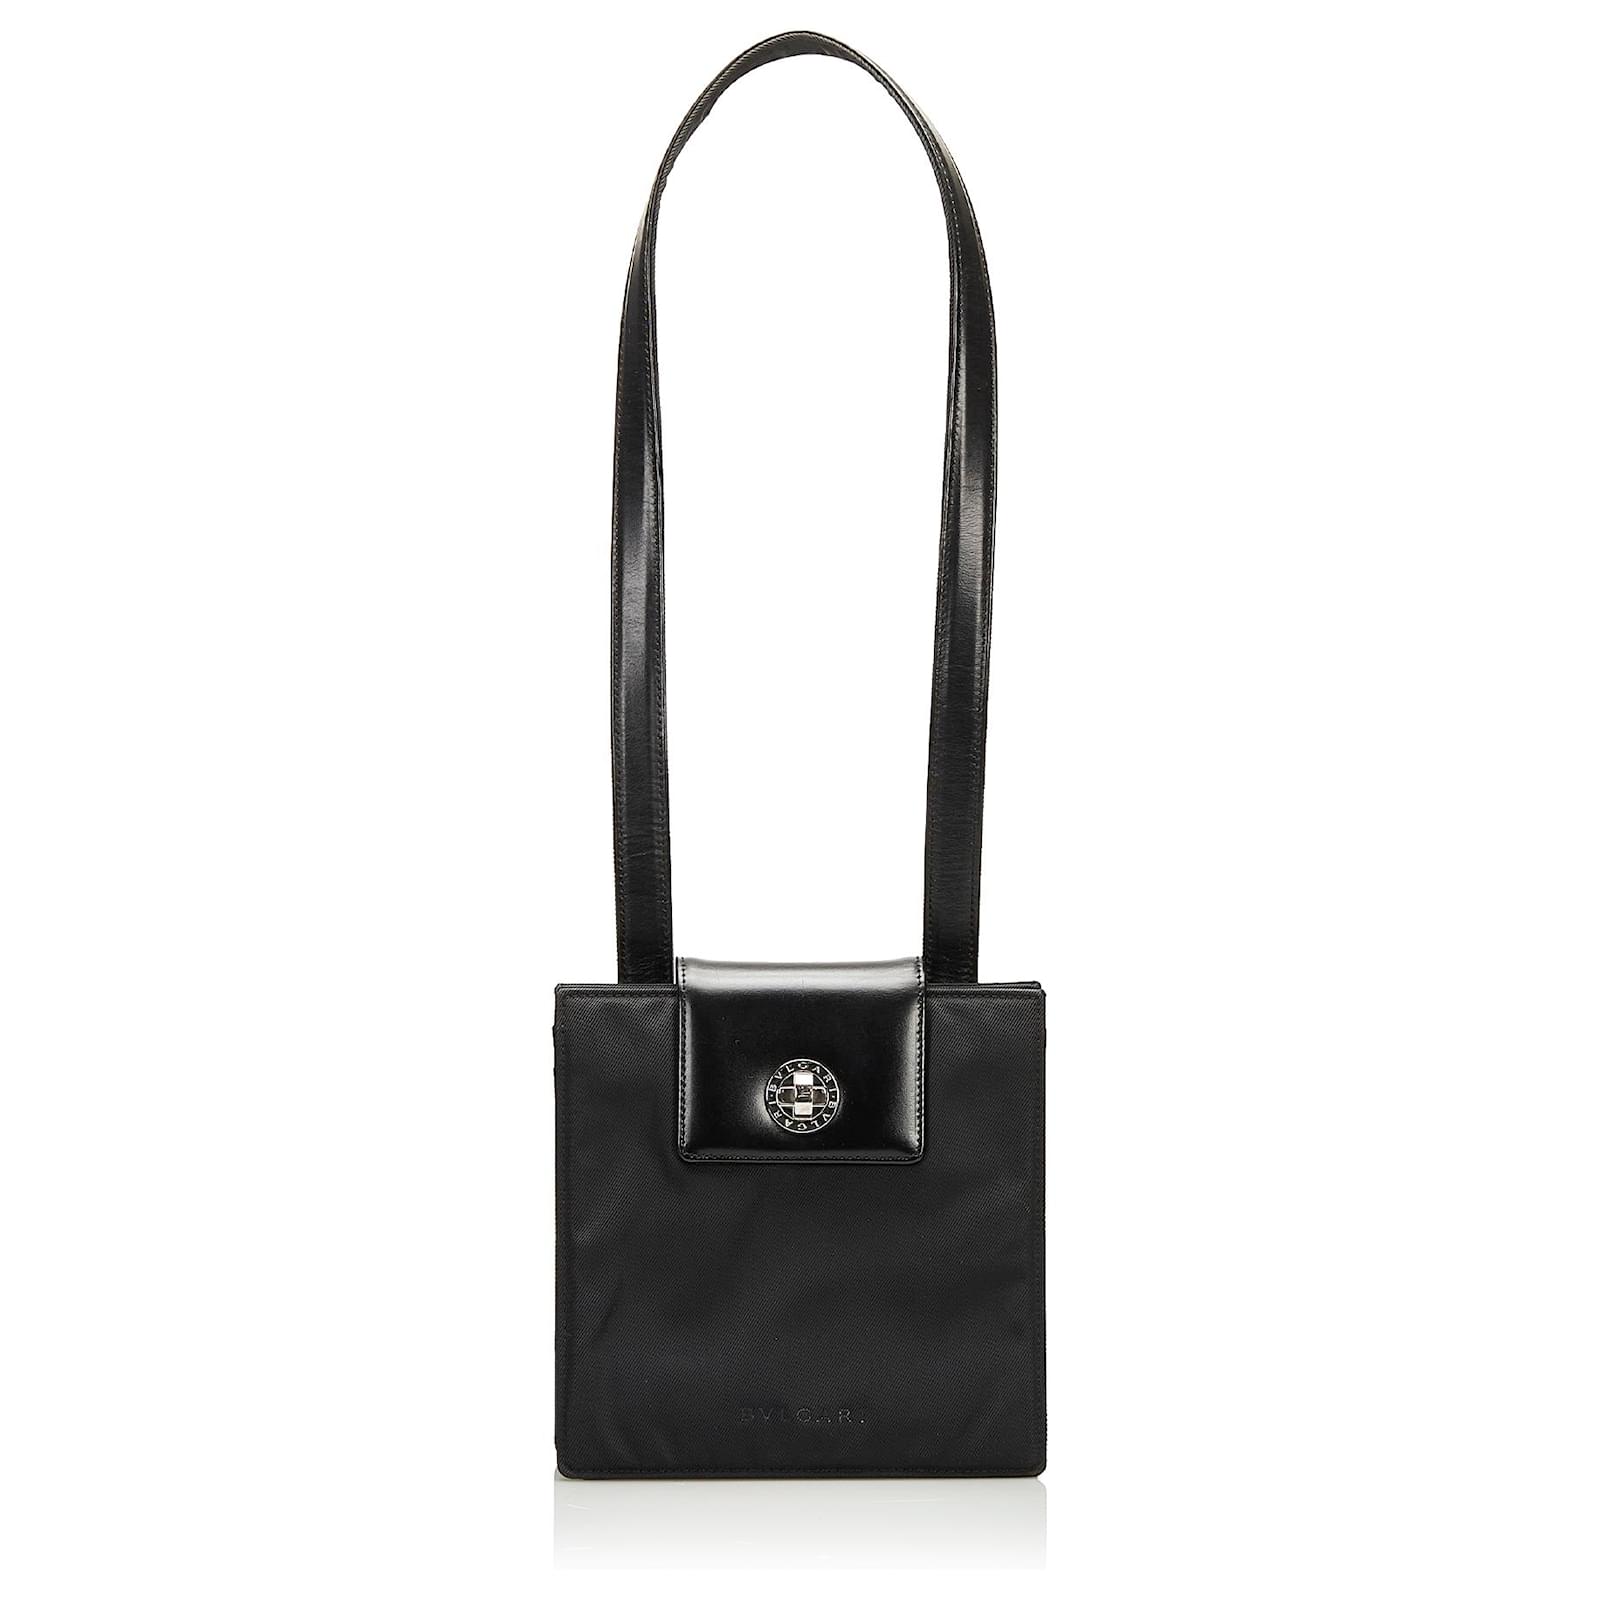 Bvlgari Women's Black Shoulder Bags